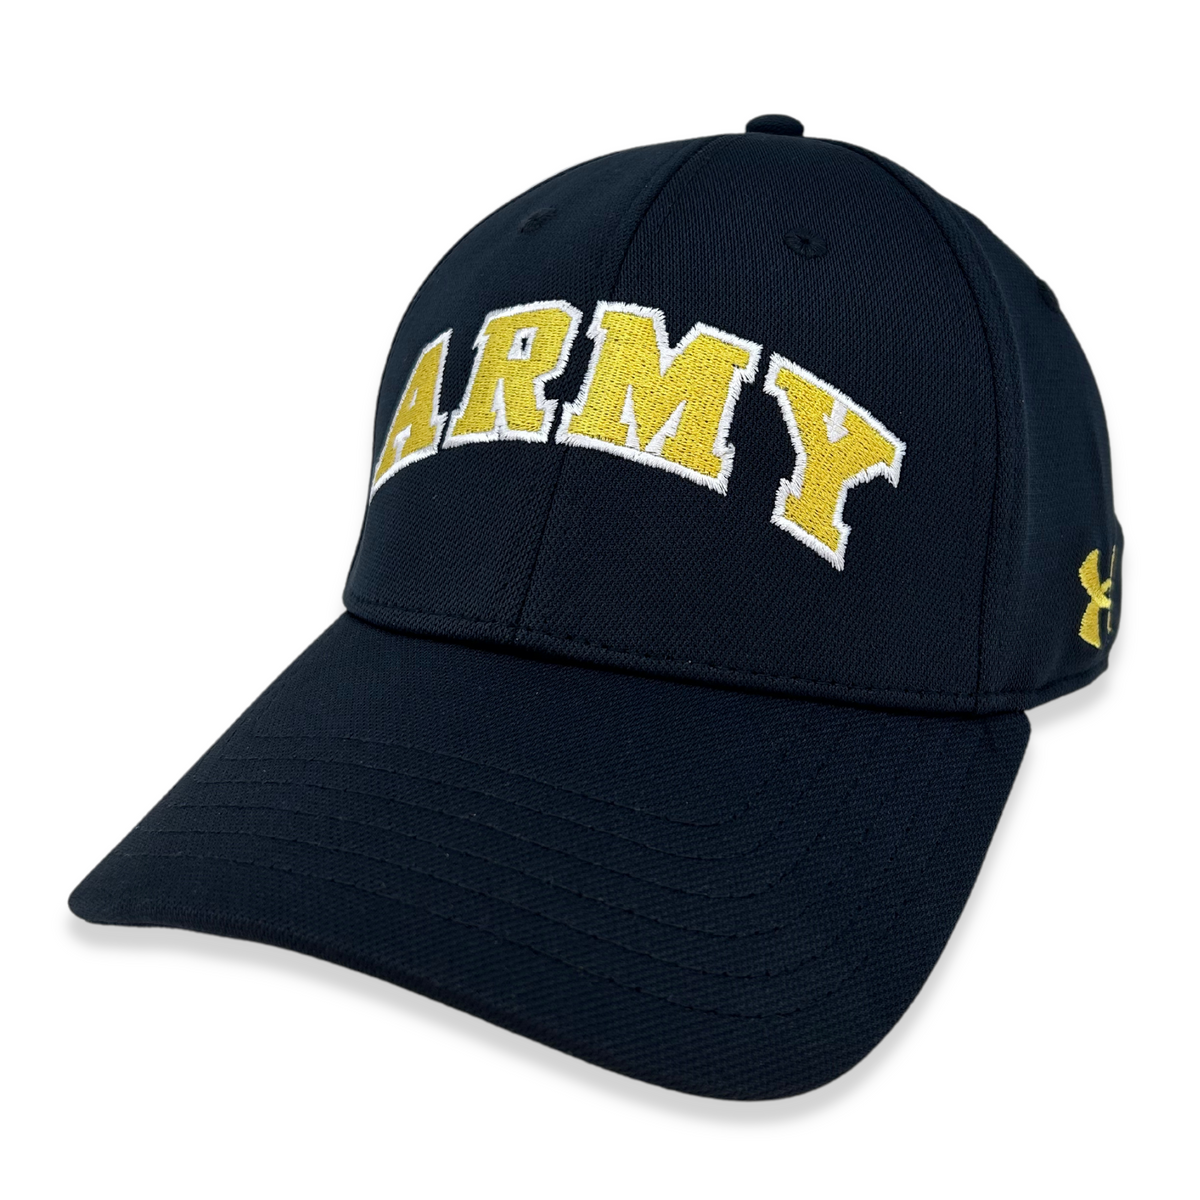 Army Under Armour Blitzing Flex Fit Hat (Black), M/L